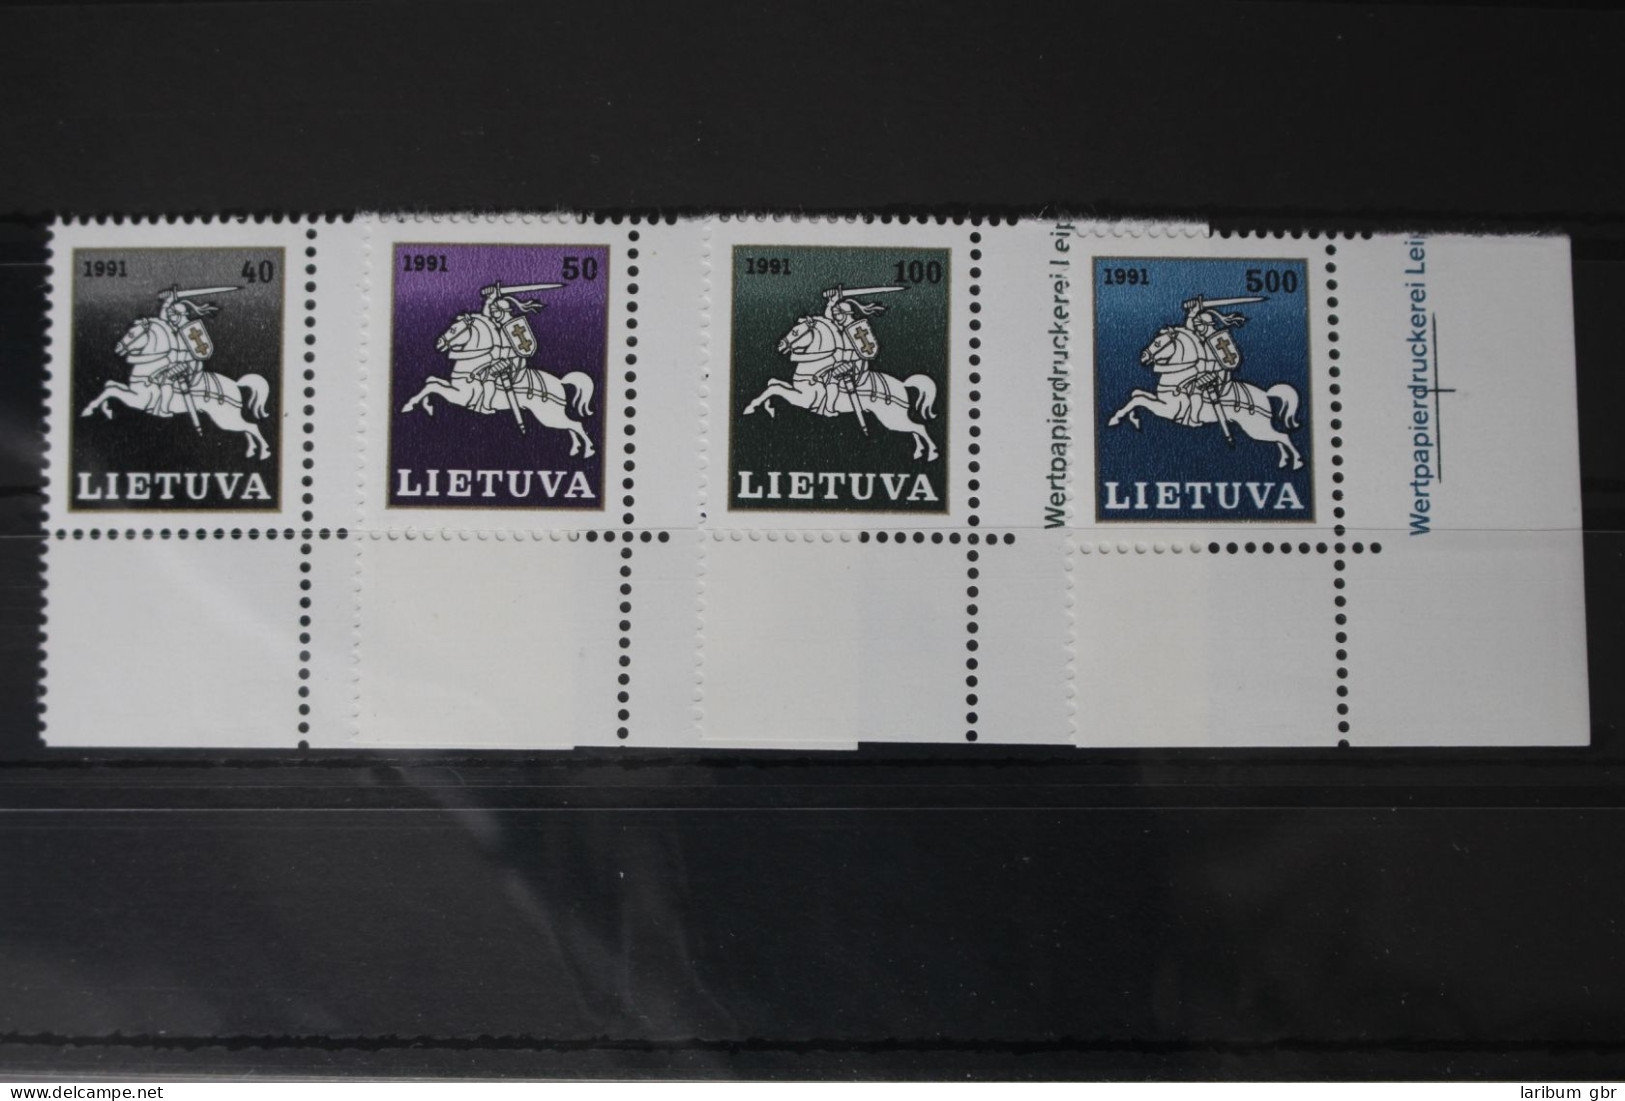 Litauen 491-494 Postfrisch #WD072 - Litauen